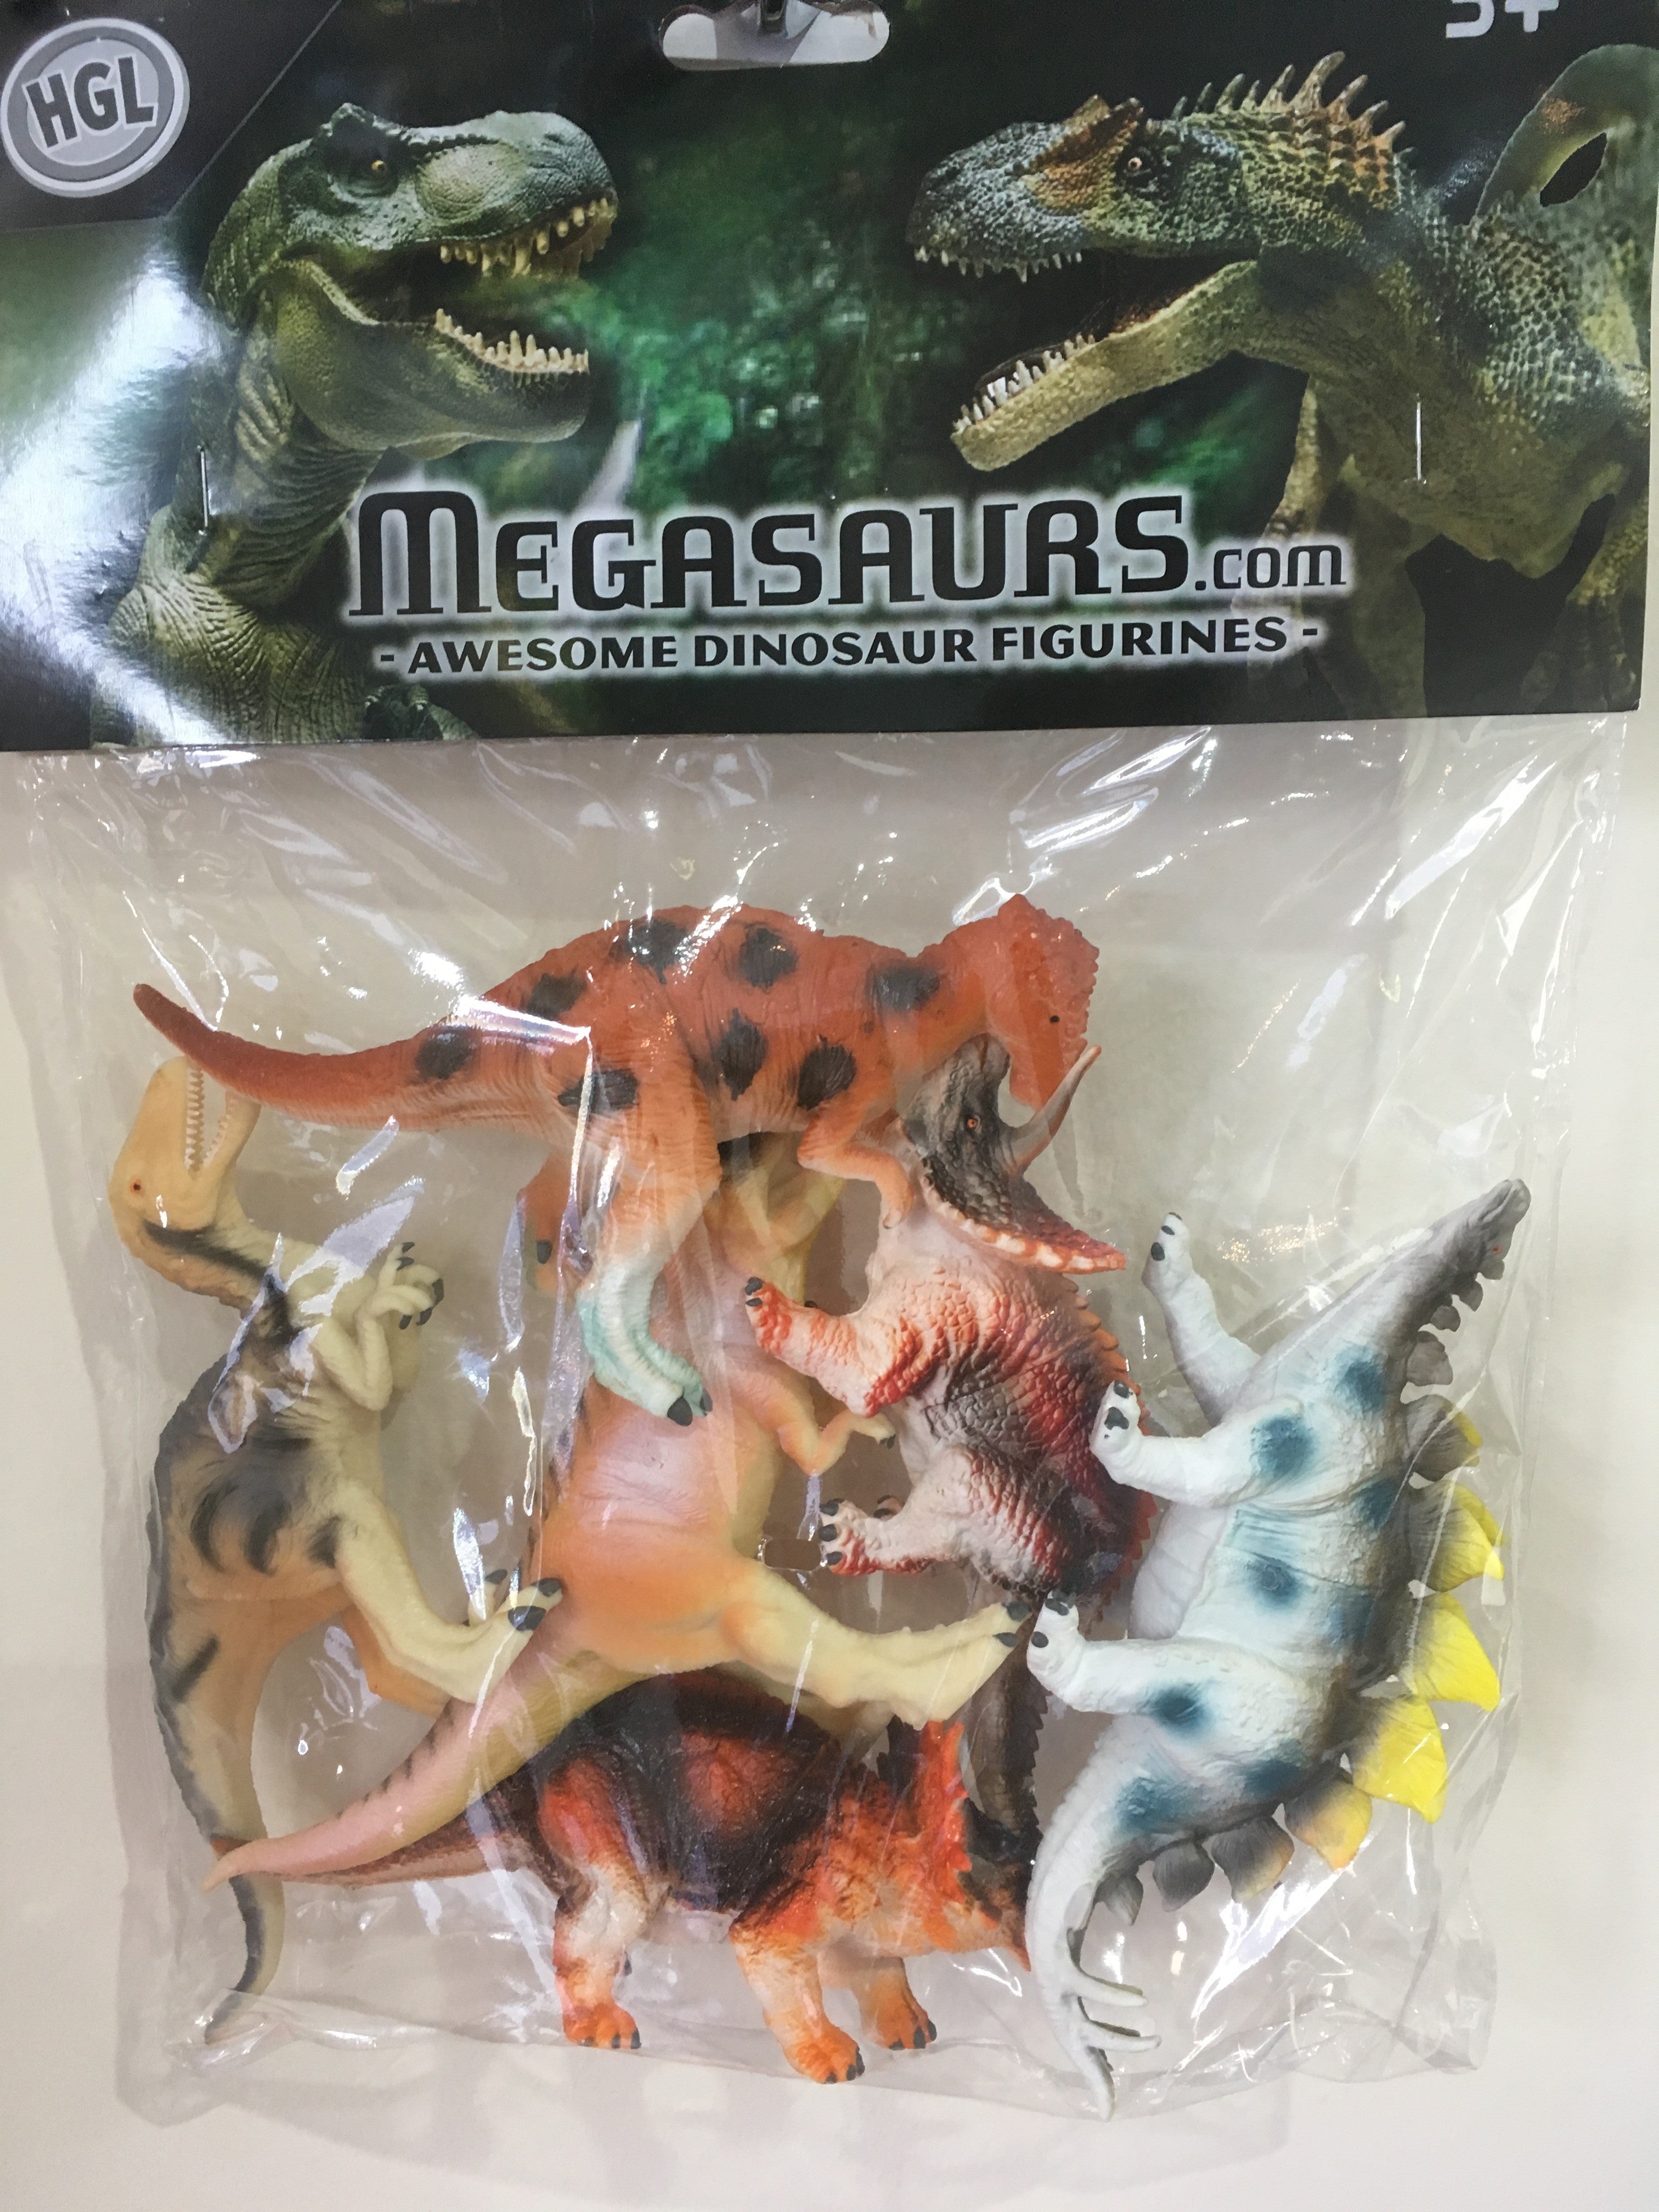 HGL Megasaurus Dinosaur Figurines